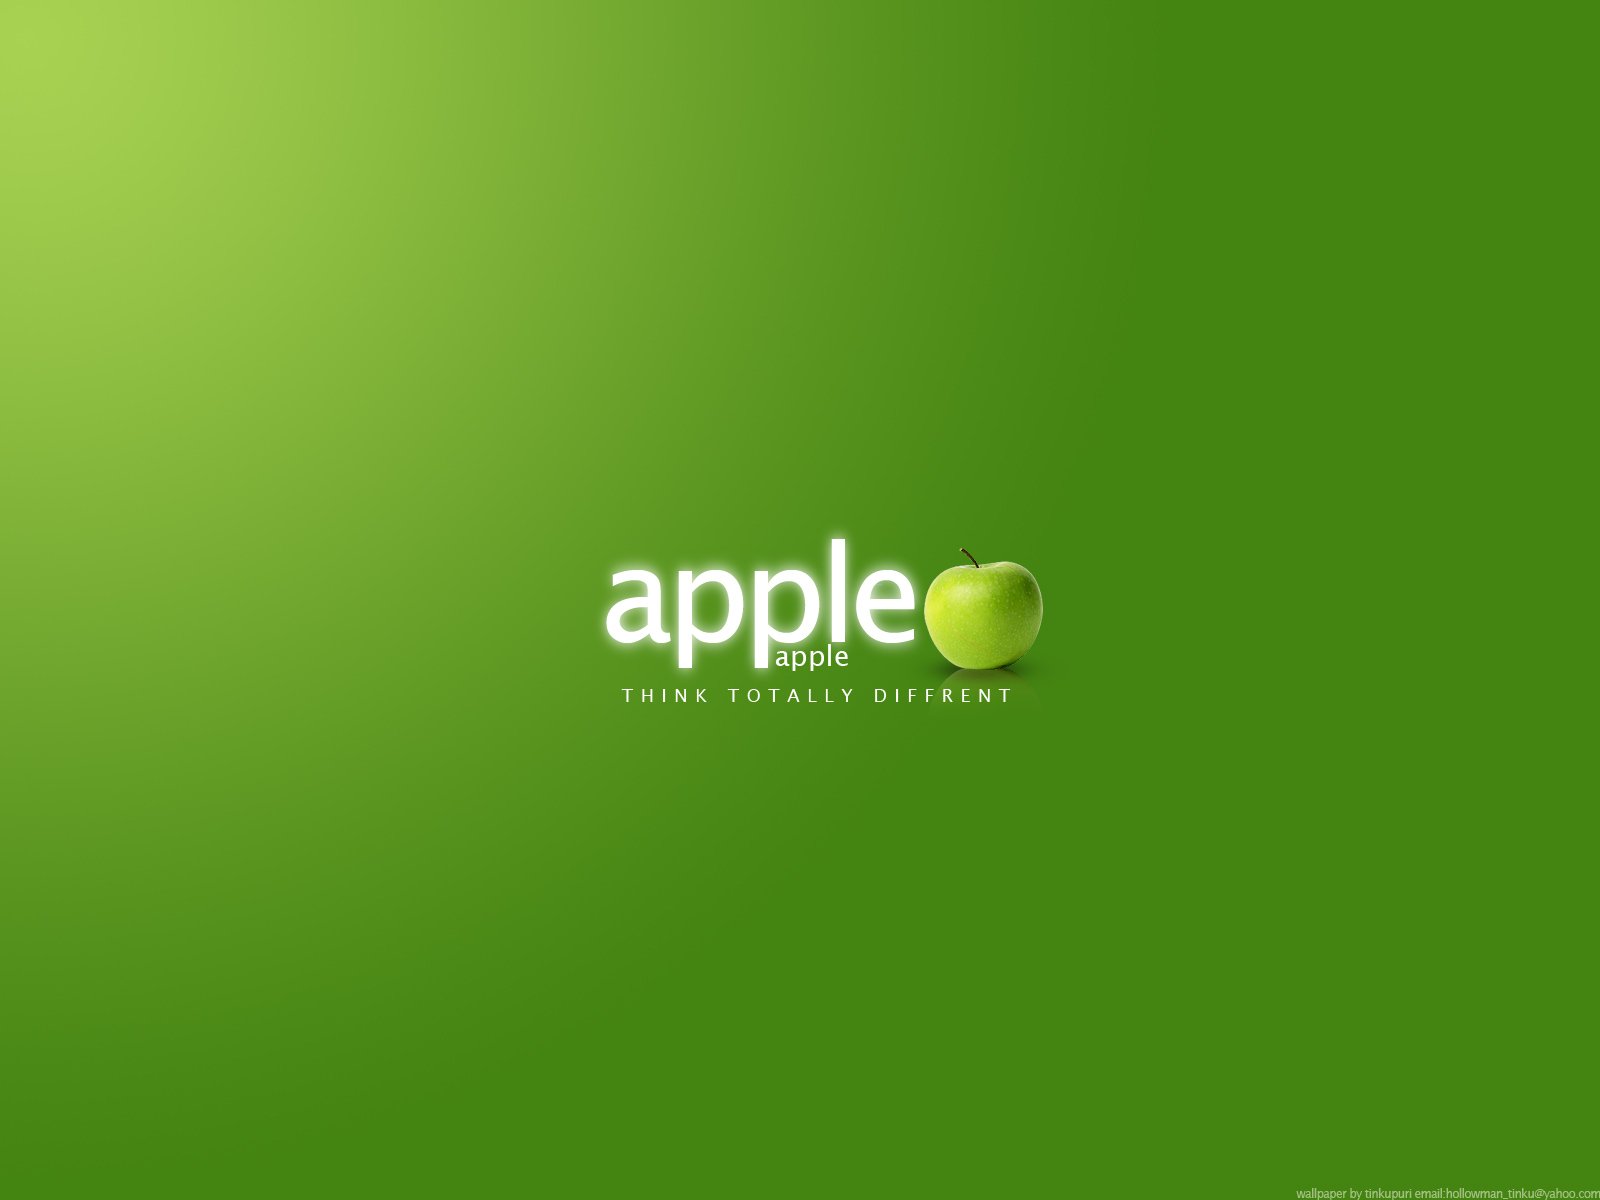 http://2.bp.blogspot.com/-o-JdnKnDJcc/Tp2PPCTqT5I/AAAAAAAADjs/OqOGgbcIGNw/s1600/Green_Apple_Think_Totally_Different_HD_Wallpaper.jpg